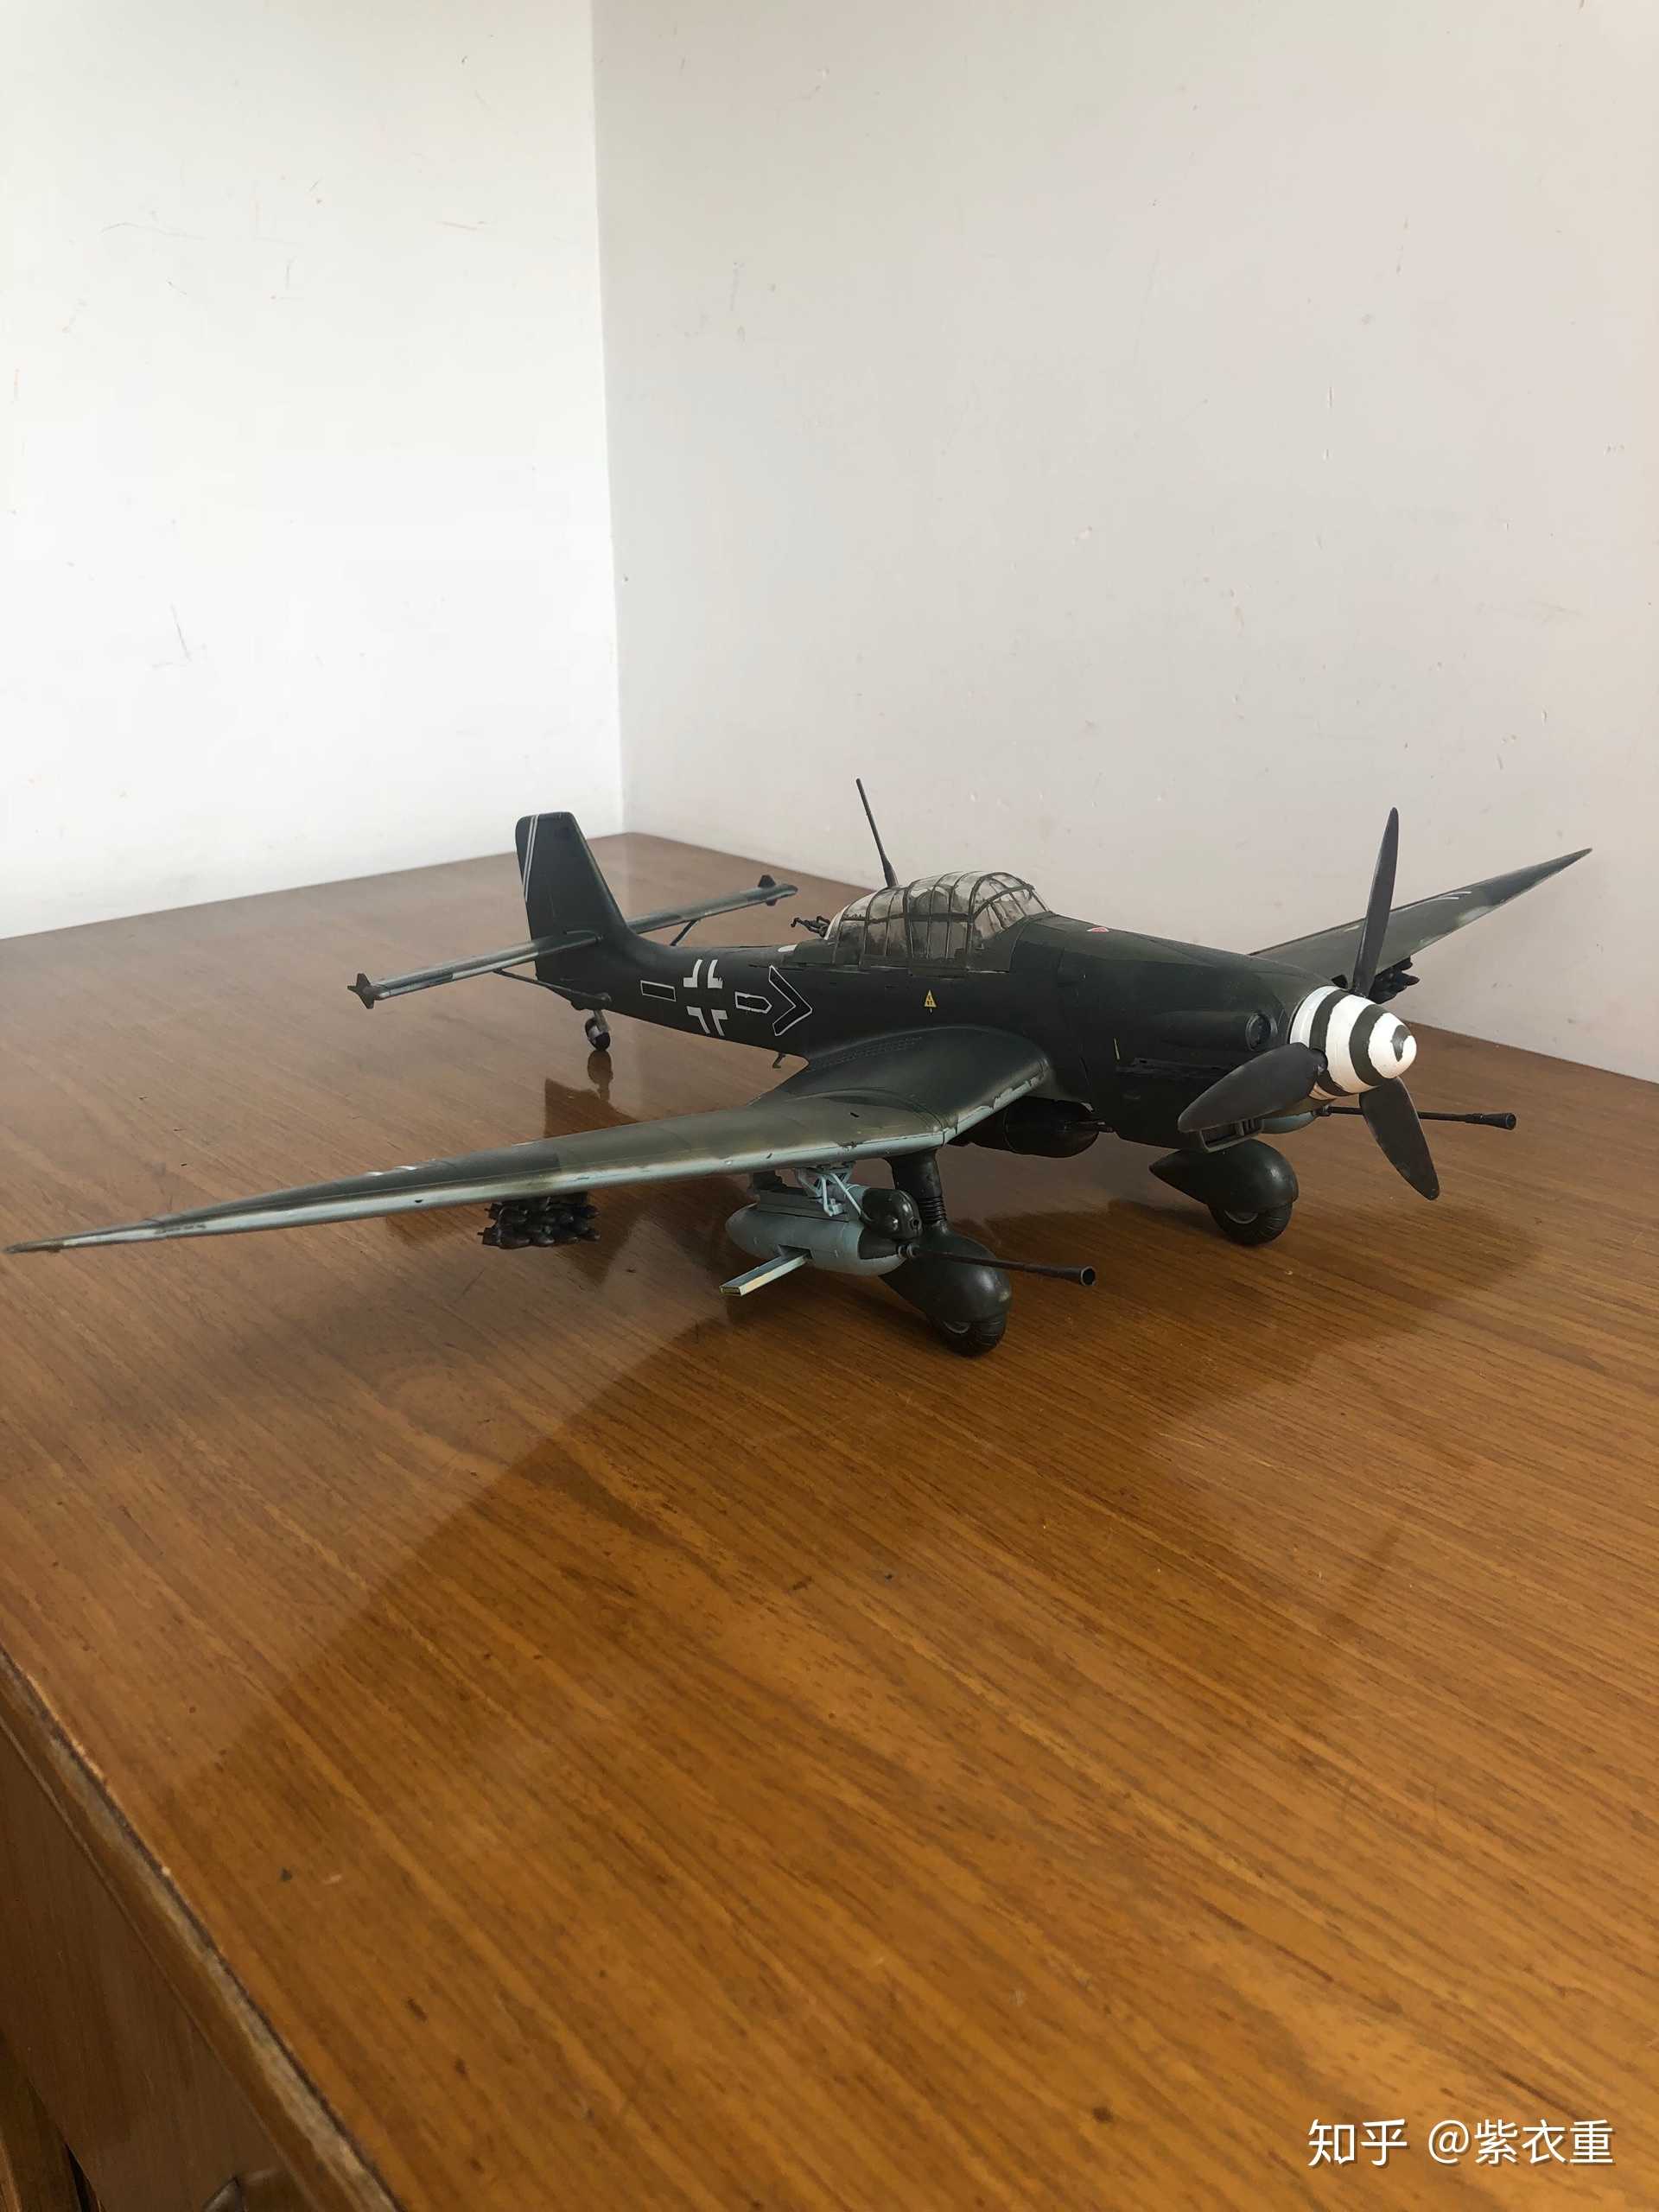 初入模型坑,1:32斯图卡ju87g2俯冲轰炸机